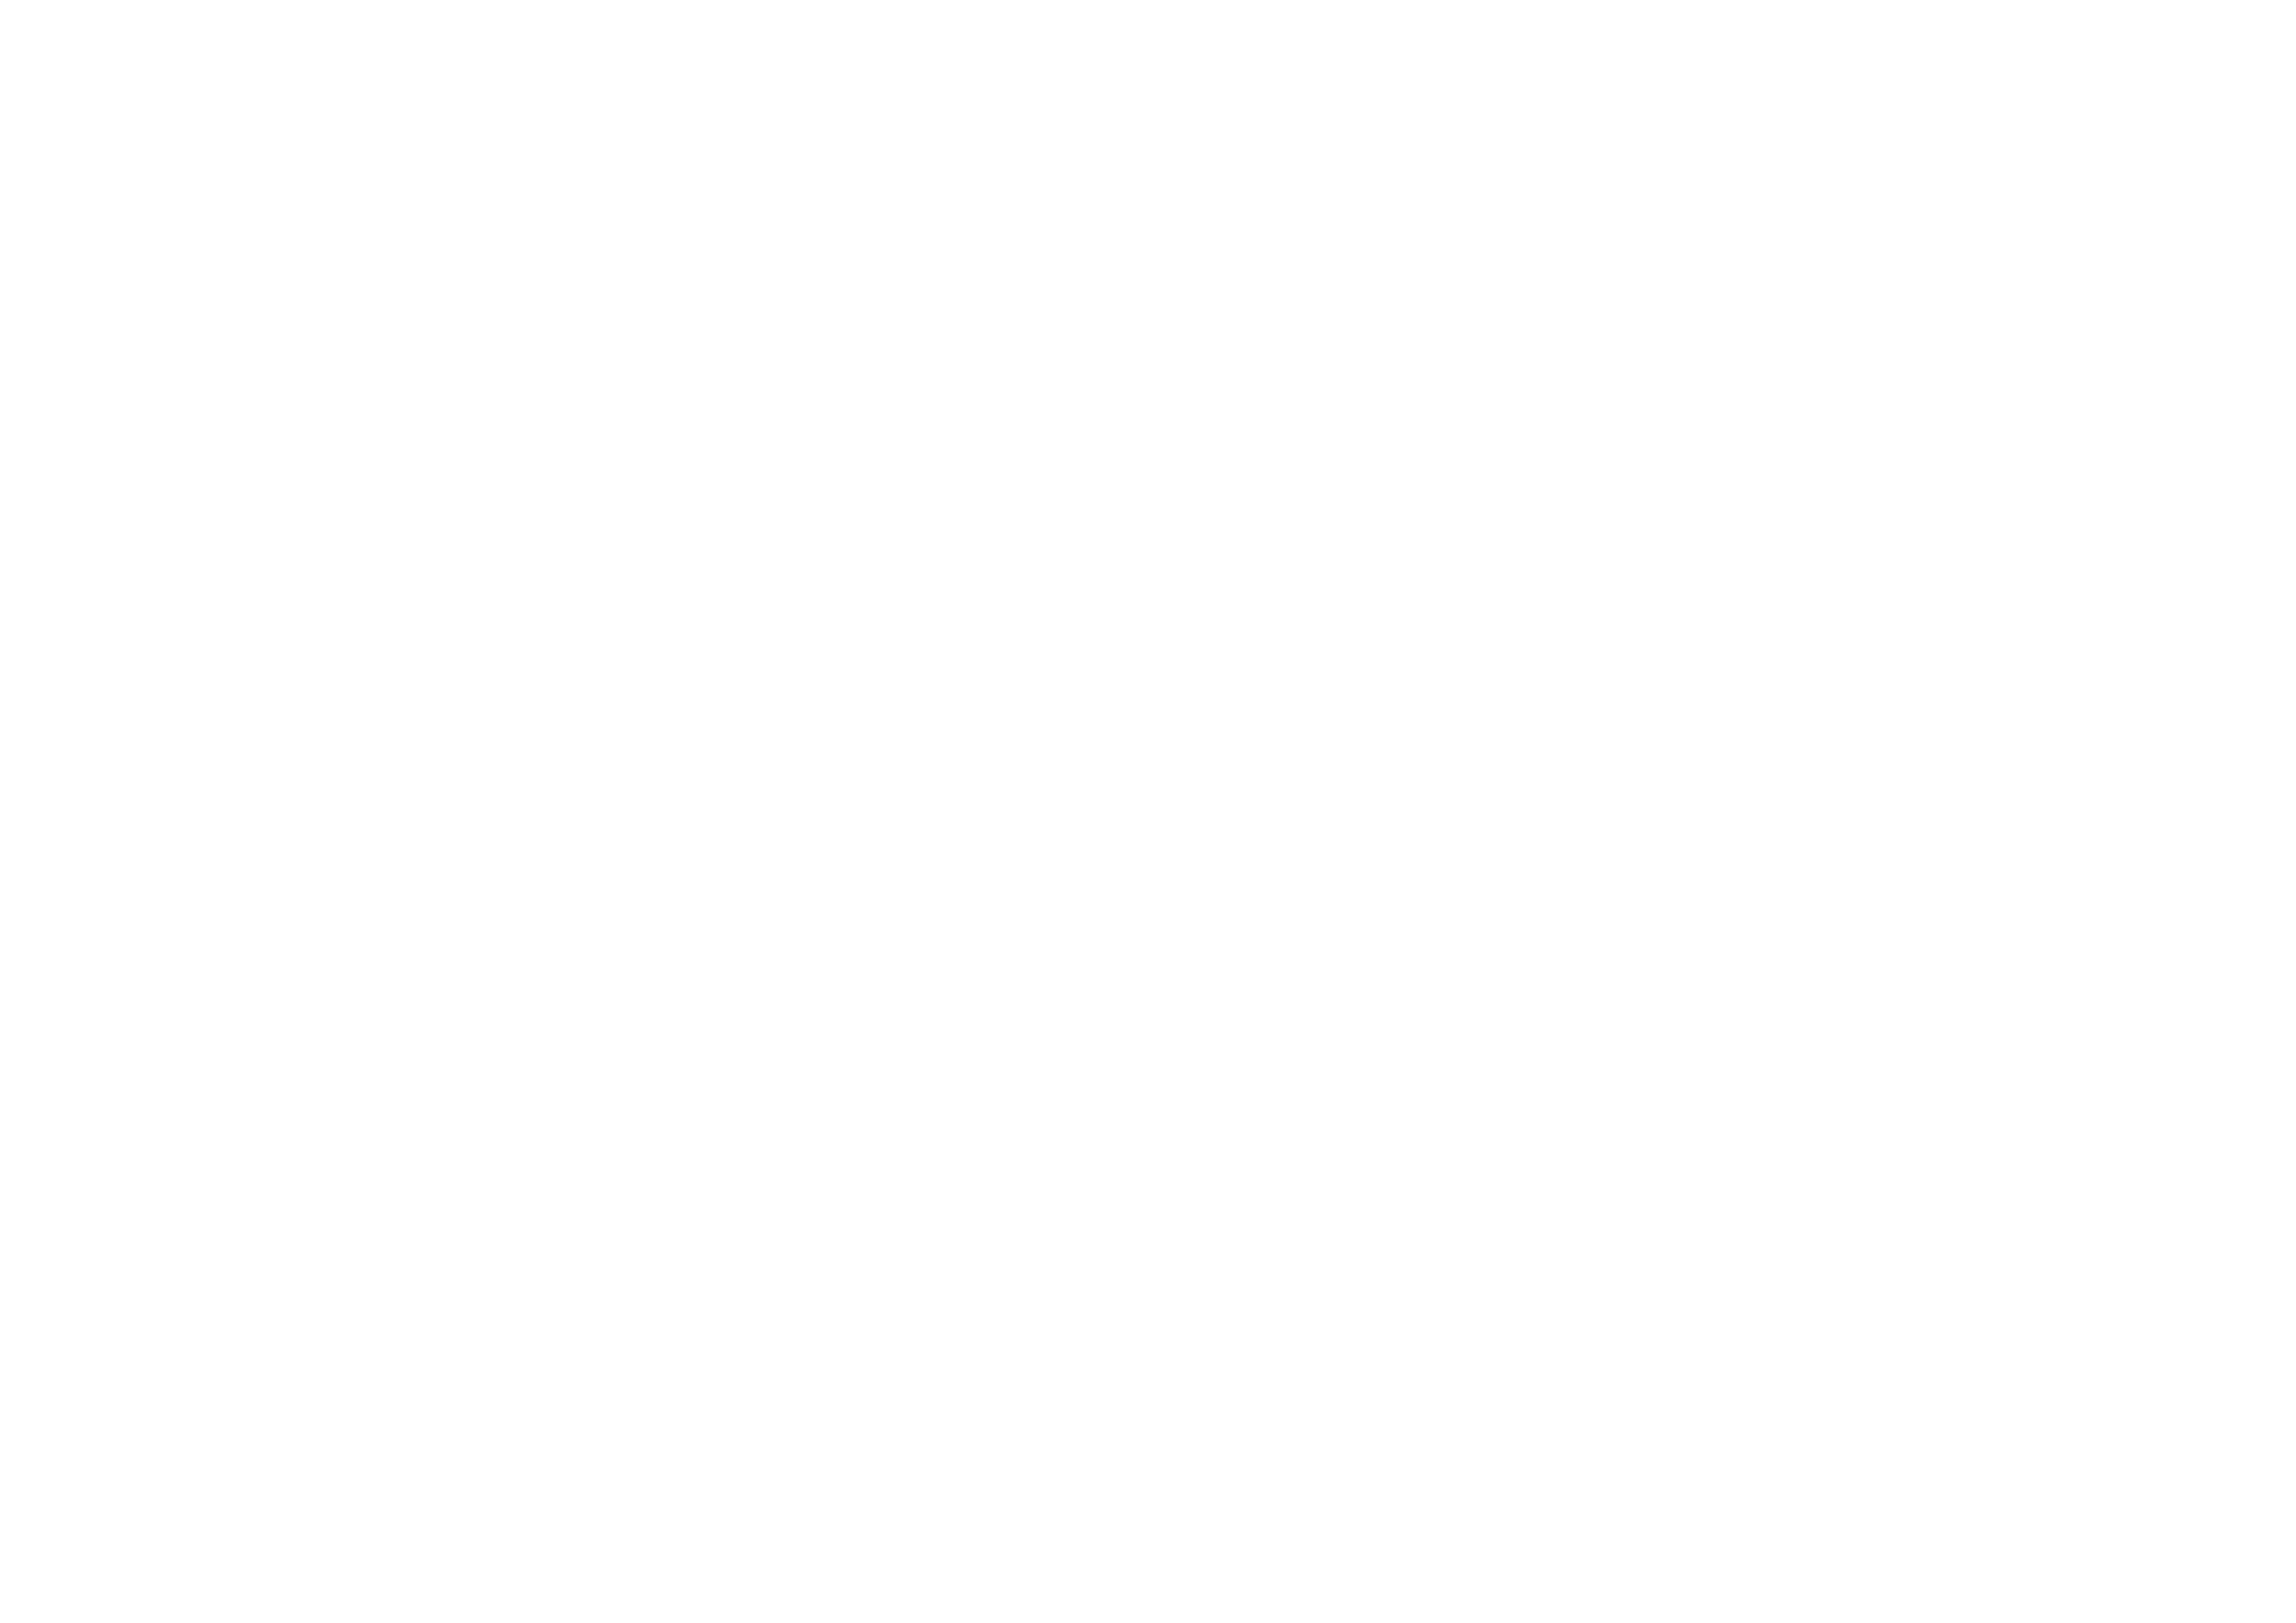 VALMONT-01